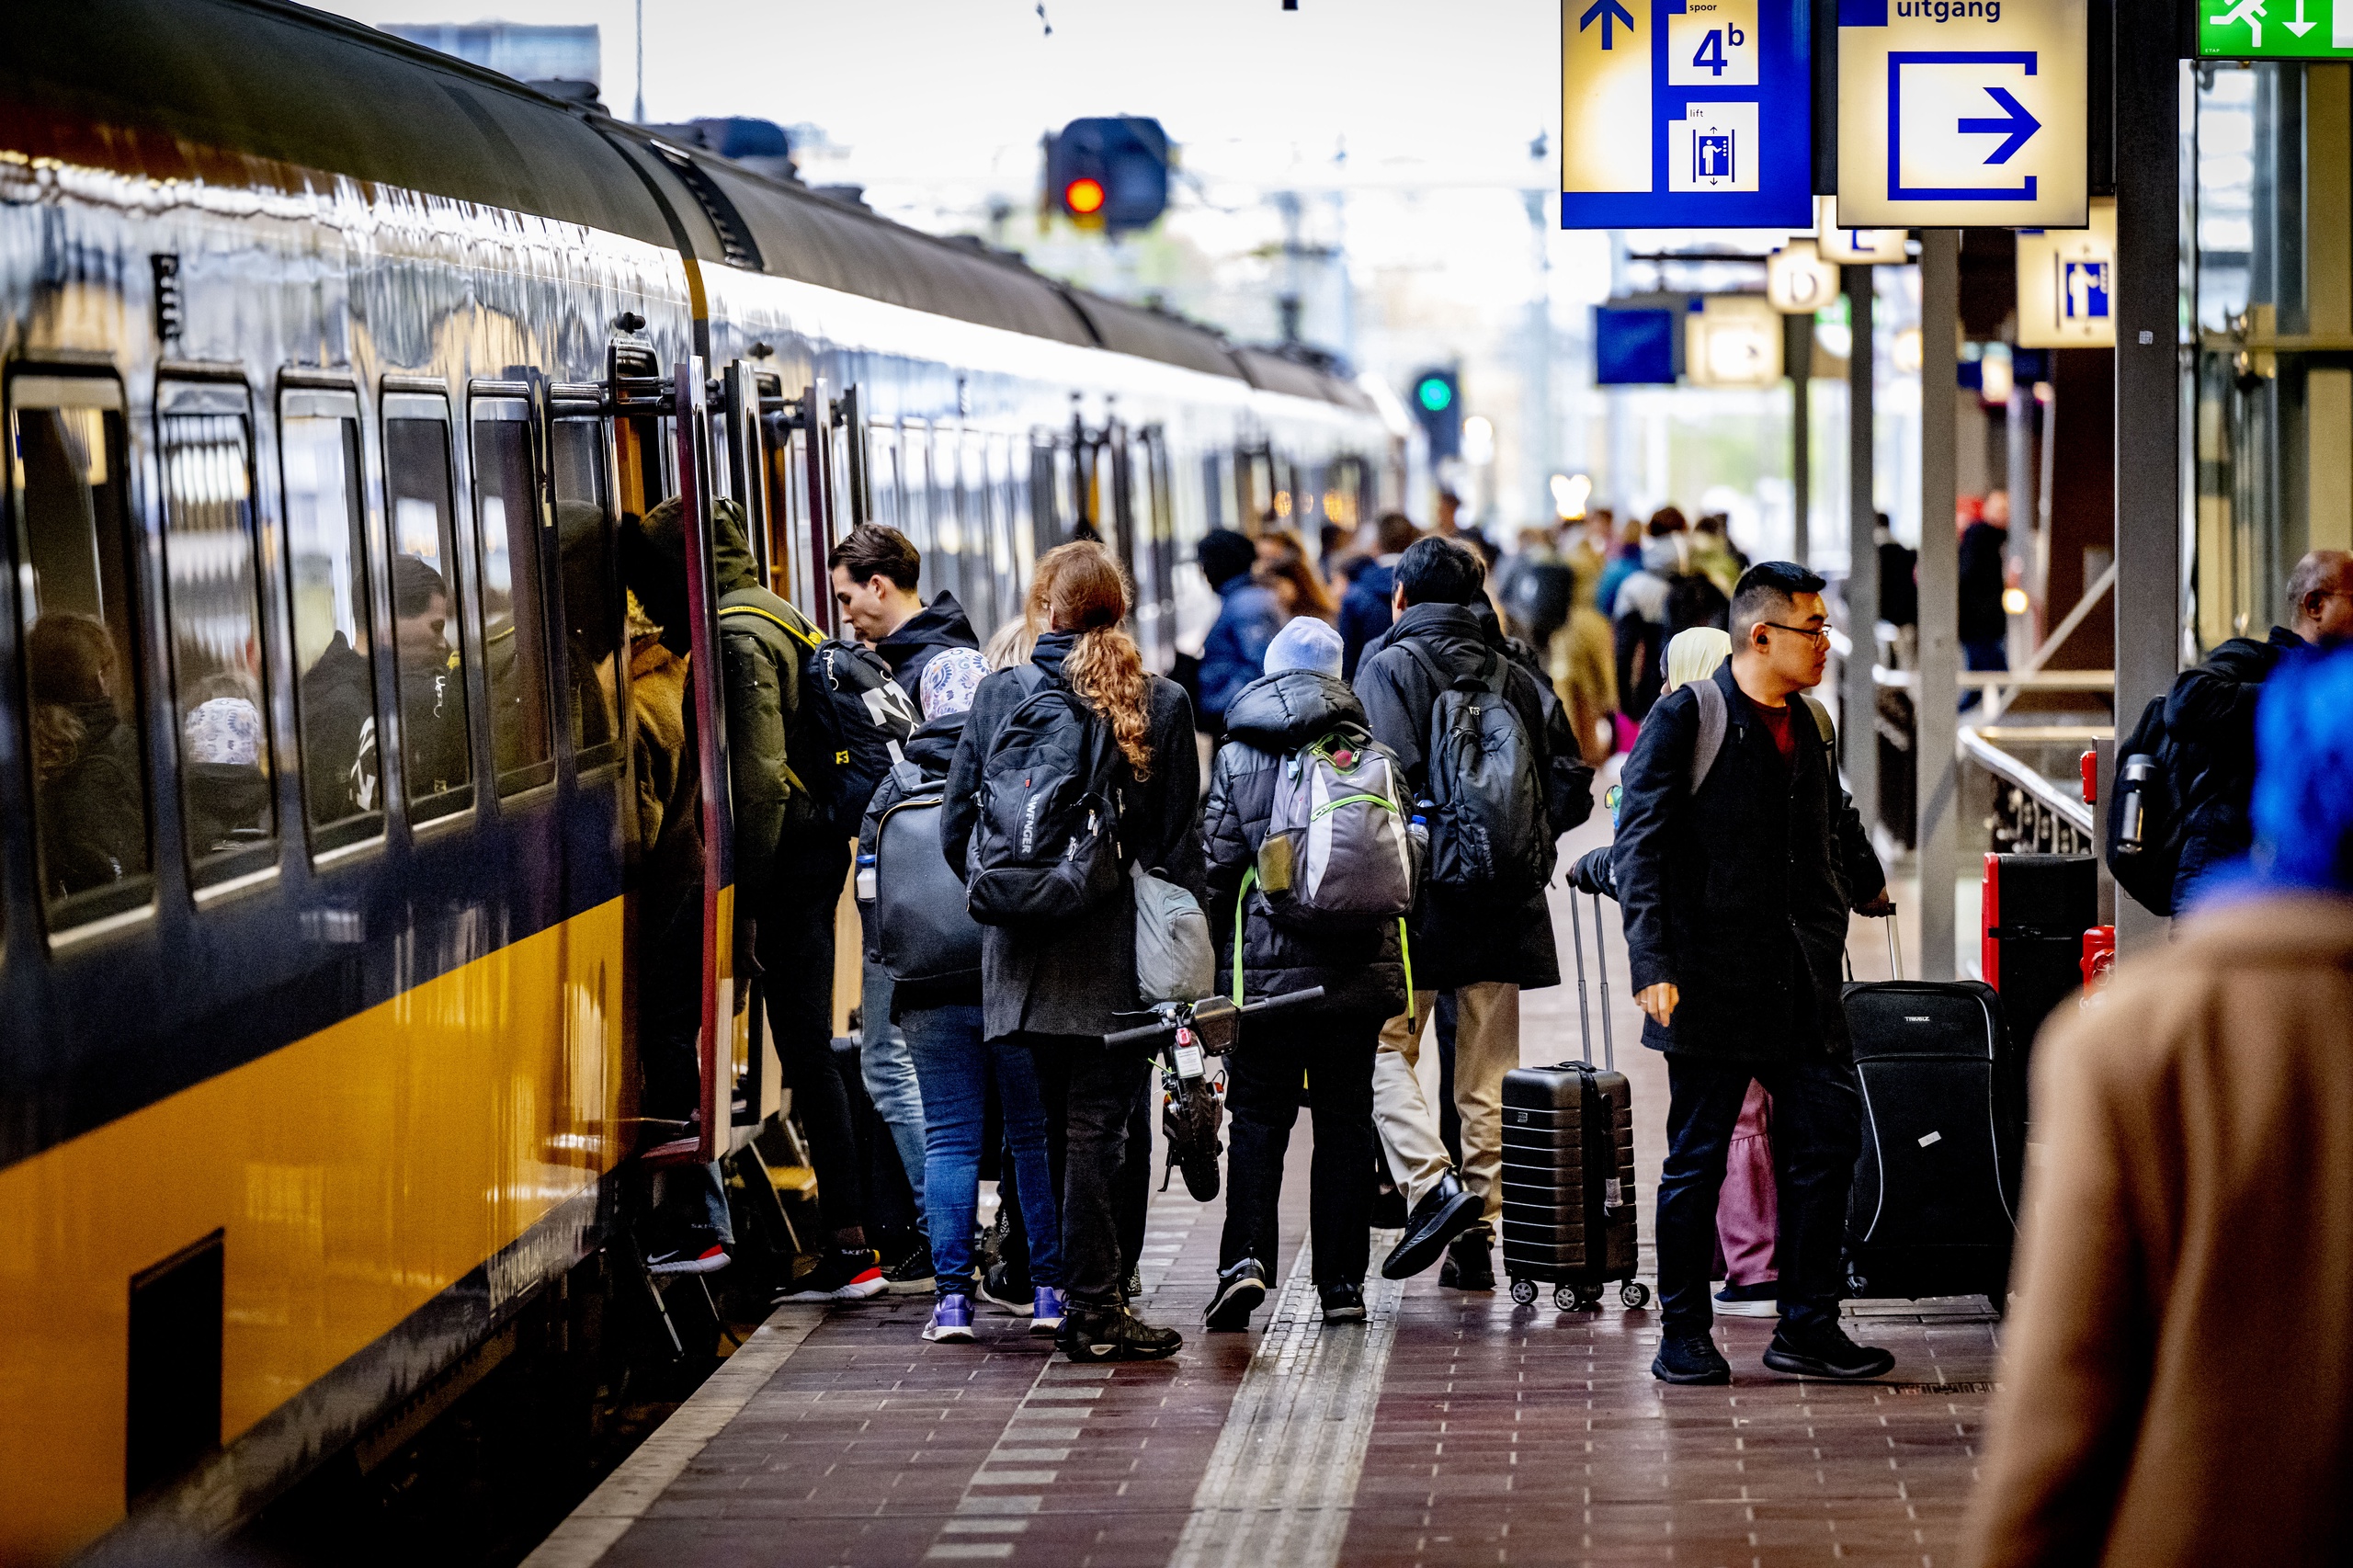 Volle treinen en een krappe arbeidsmarkt zorgen ervoor dat steeds meer werkgevers ervoor kiezen om hun personeel eersteklas te laten reizen. 